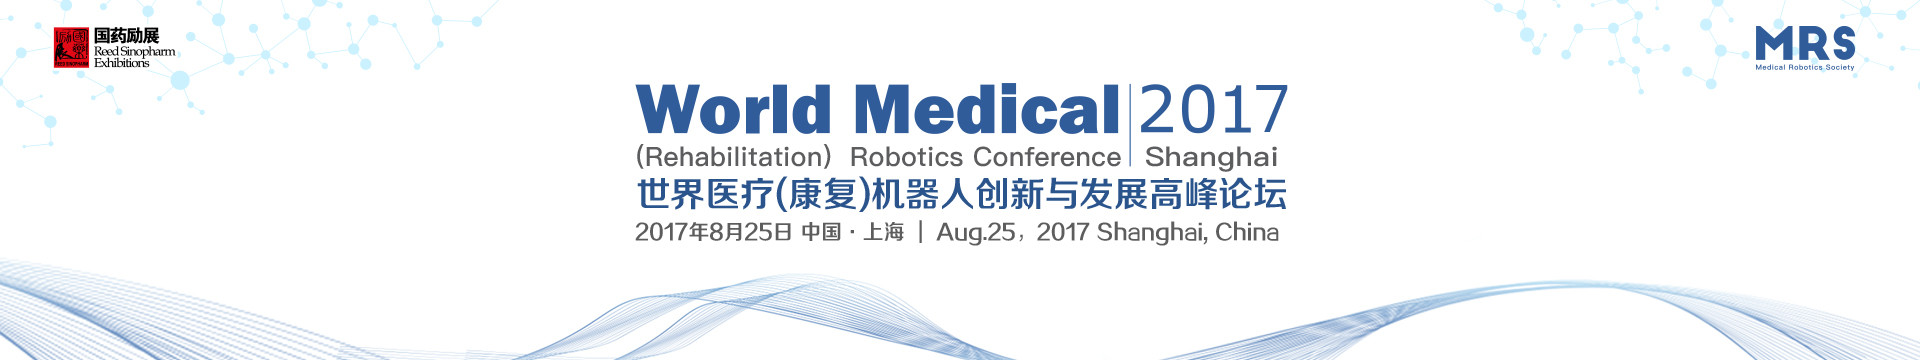 2017世界医疗(康复)机器人创新与发展高峰论坛